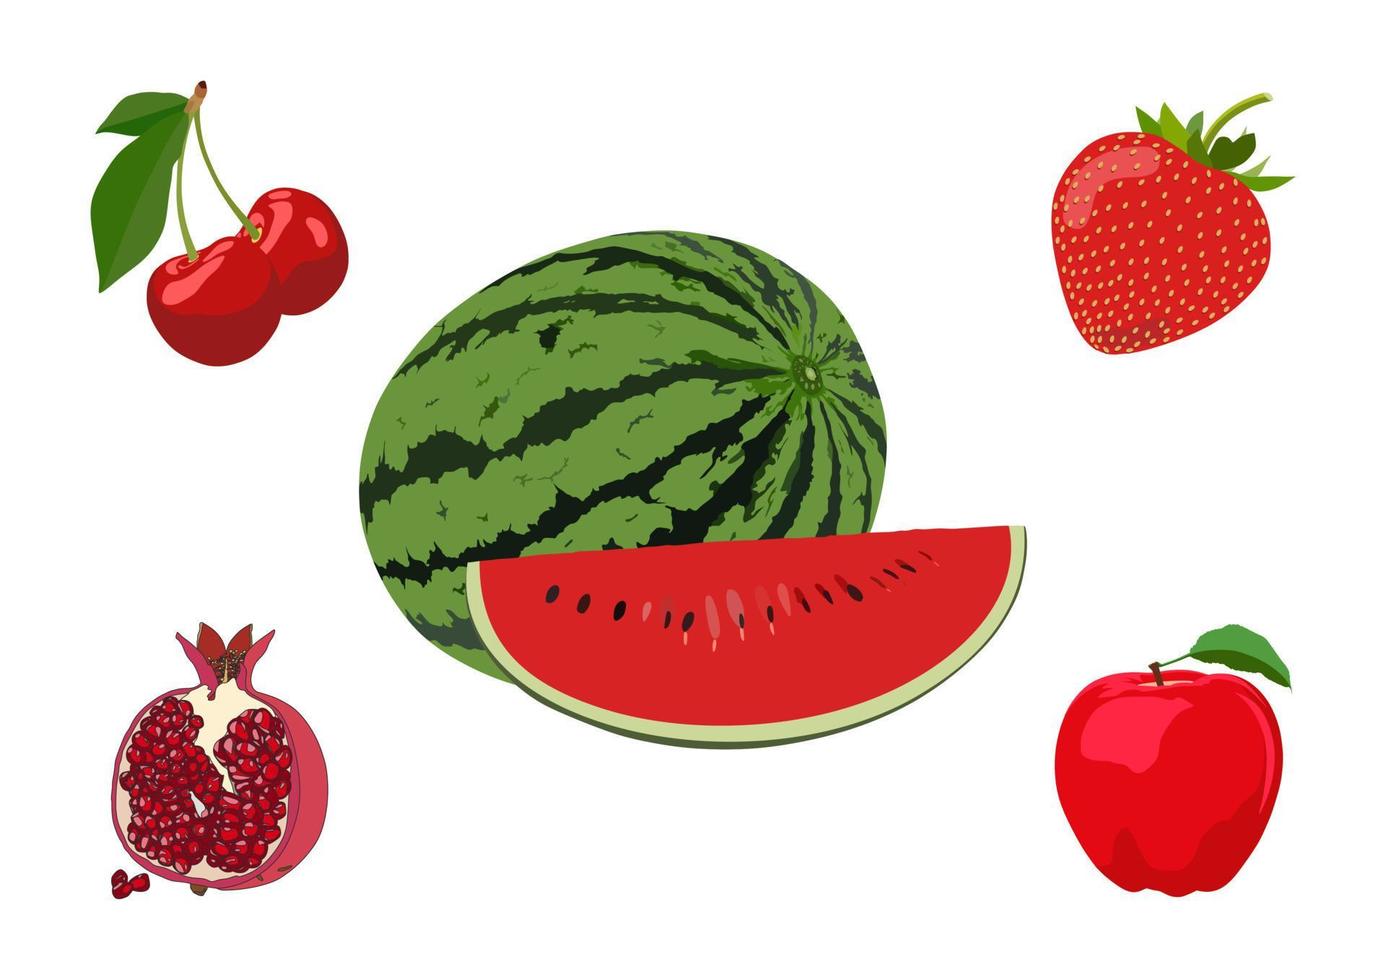 vattenmelon, körsbär, jordgubbe, äpple, granatäpple isolerat på vit bakgrund. uppsättning eller grupp frukter. exotisk, friska. röd färger. vektor